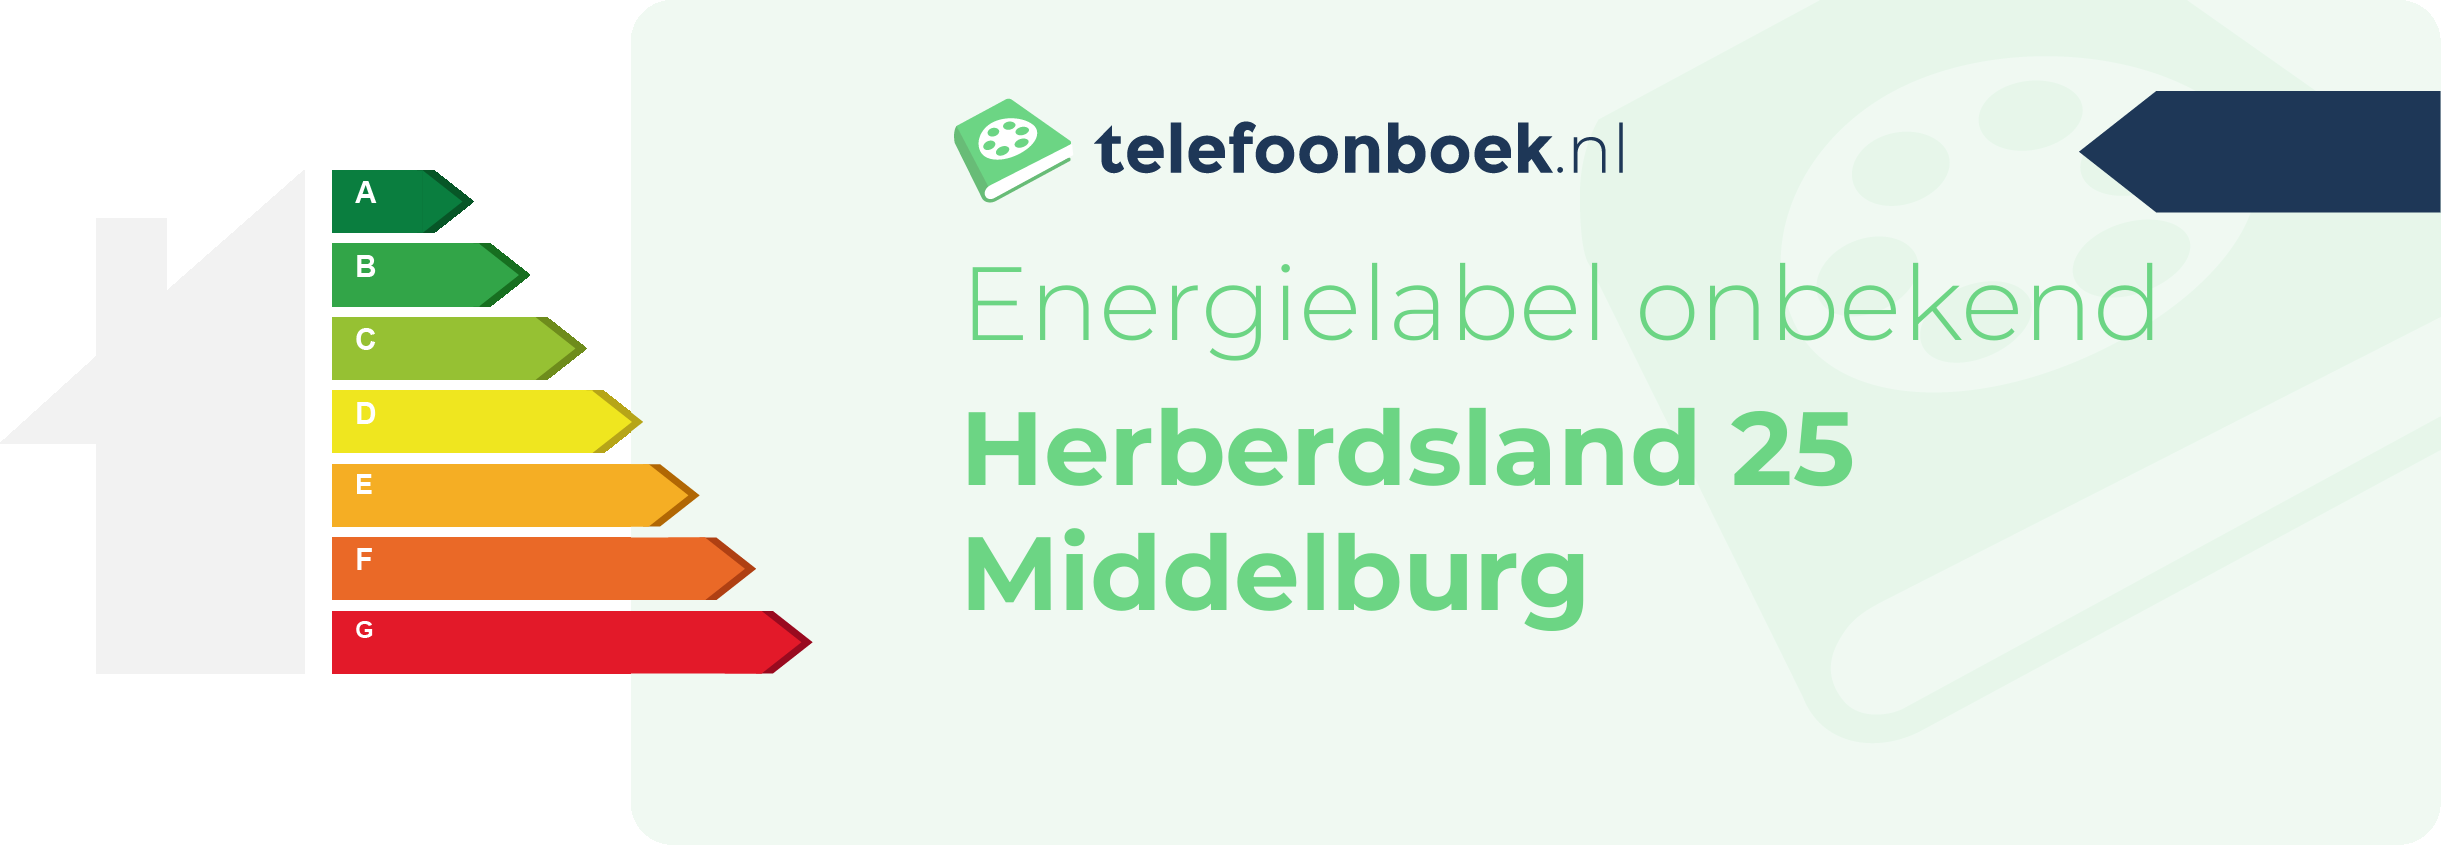 Energielabel Herberdsland 25 Middelburg